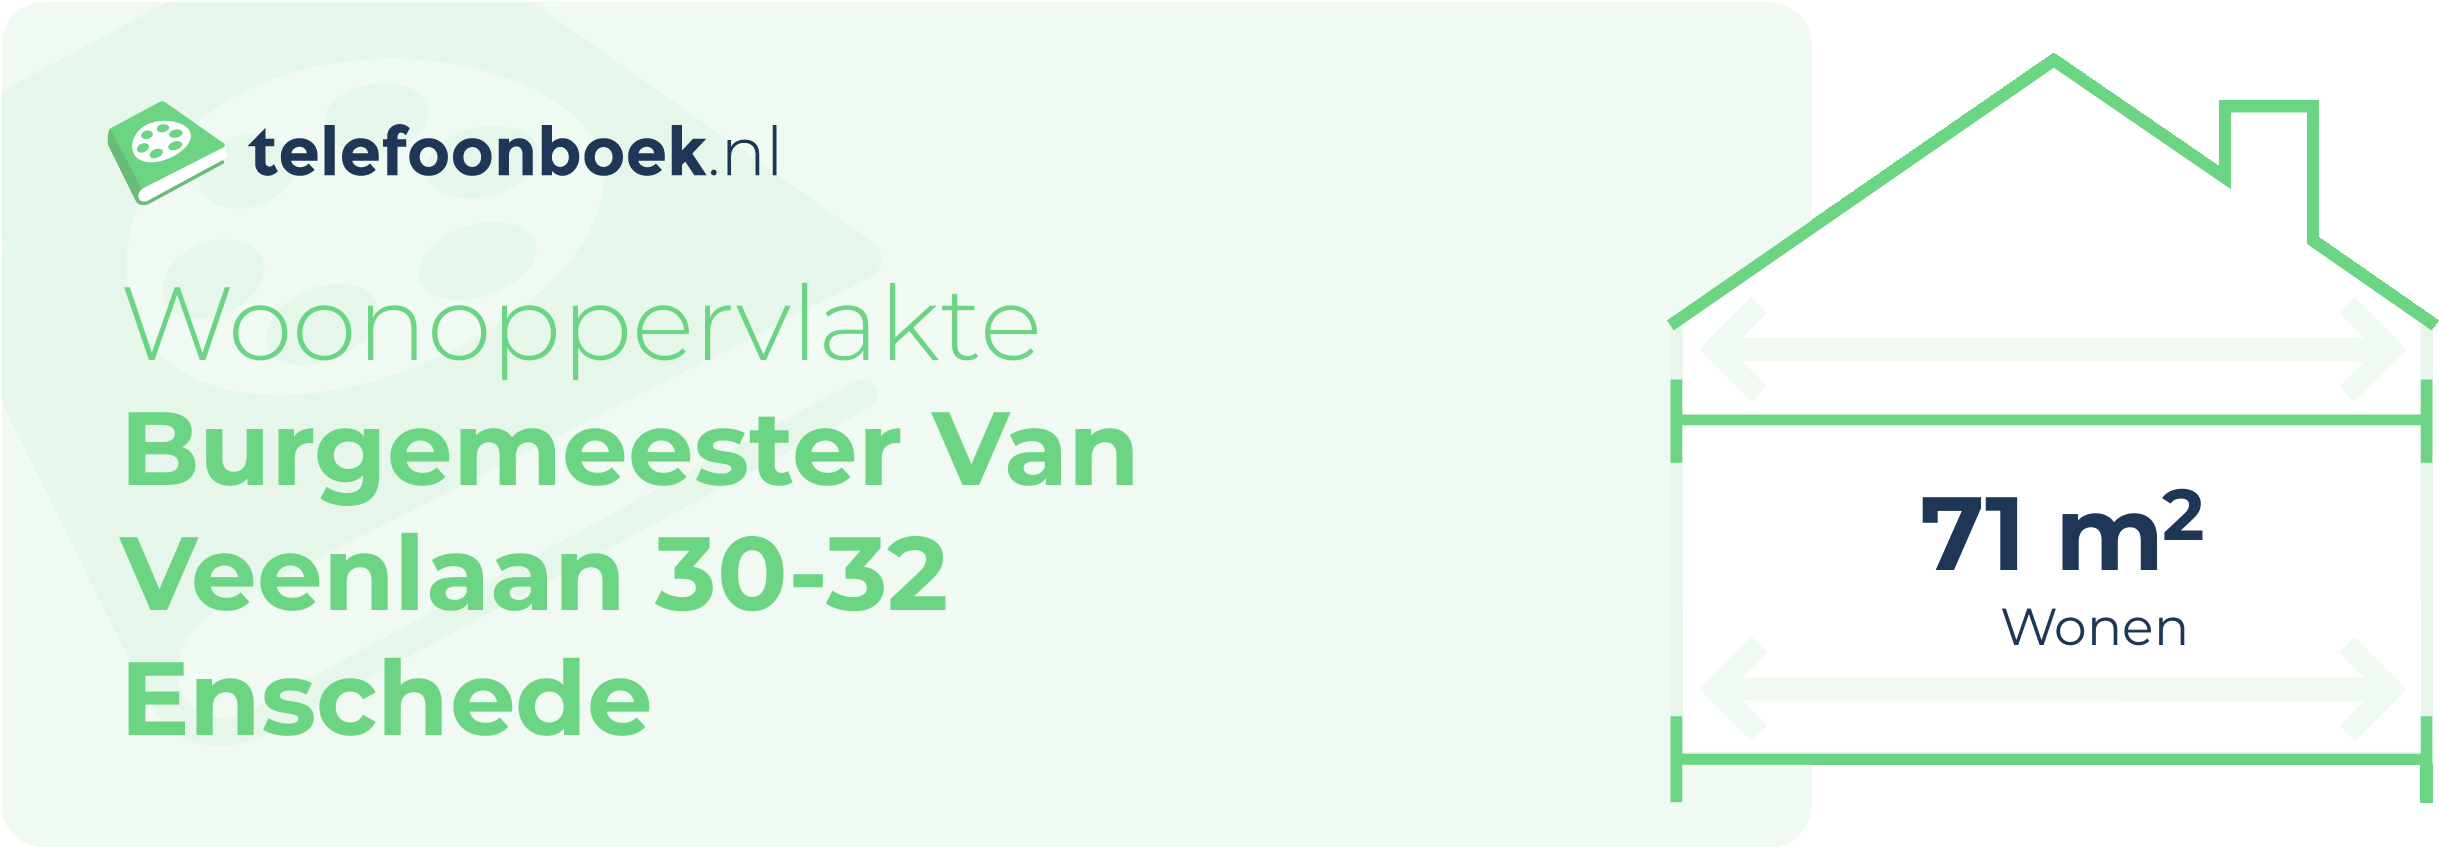 Woonoppervlakte Burgemeester Van Veenlaan 30-32 Enschede